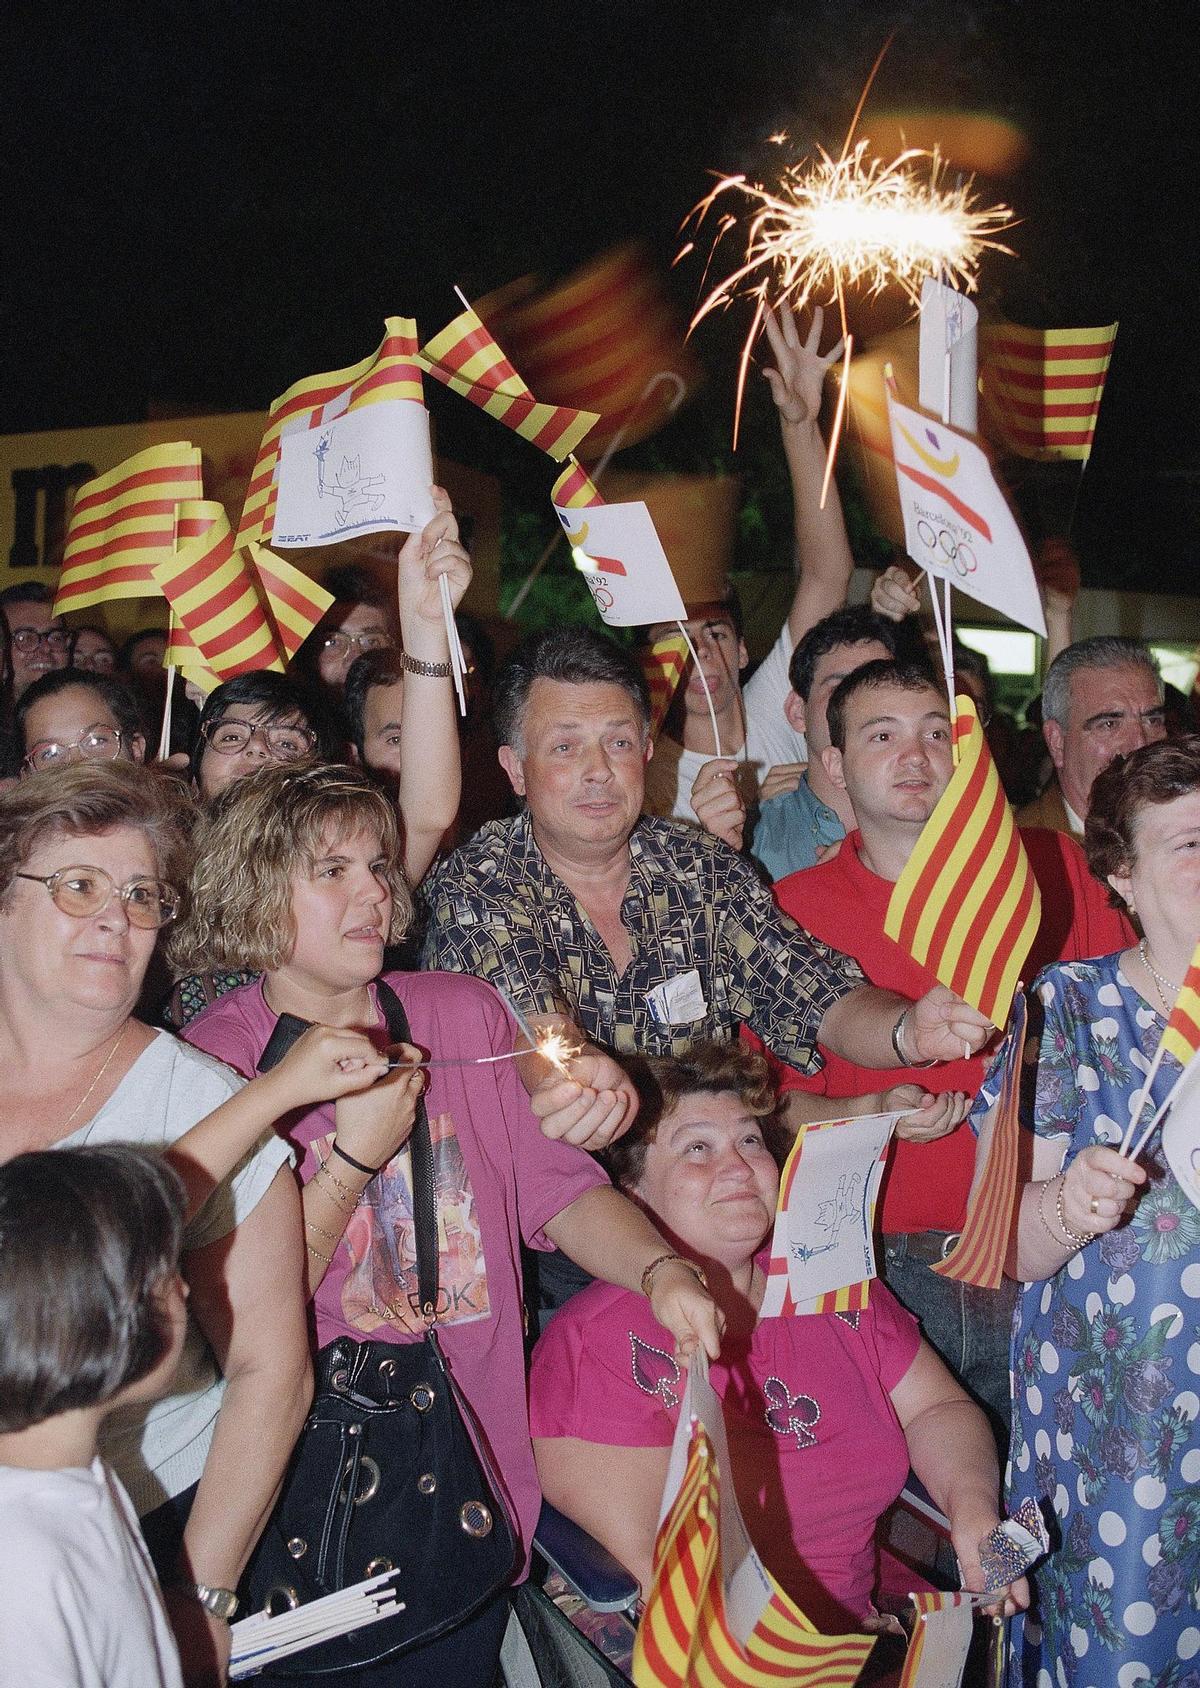 Público emocionado en la calle, con banderas de Catalunya y de los Juegos Olímpicos, durante la celebración del evento en verano de 1992.